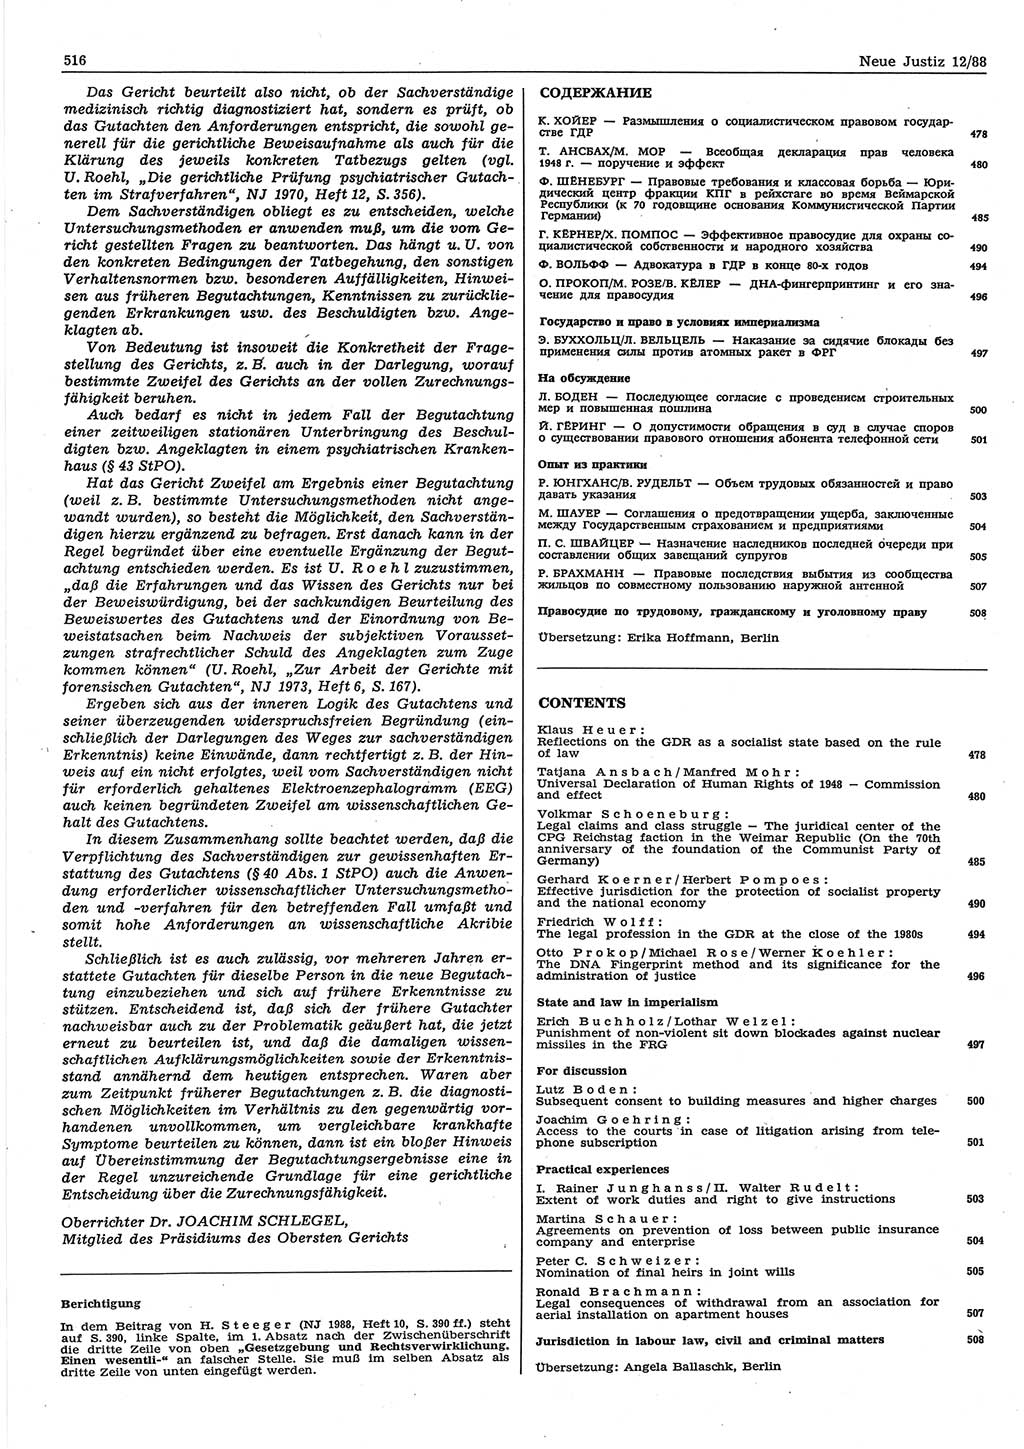 Neue Justiz (NJ), Zeitschrift für sozialistisches Recht und Gesetzlichkeit [Deutsche Demokratische Republik (DDR)], 42. Jahrgang 1988, Seite 516 (NJ DDR 1988, S. 516)